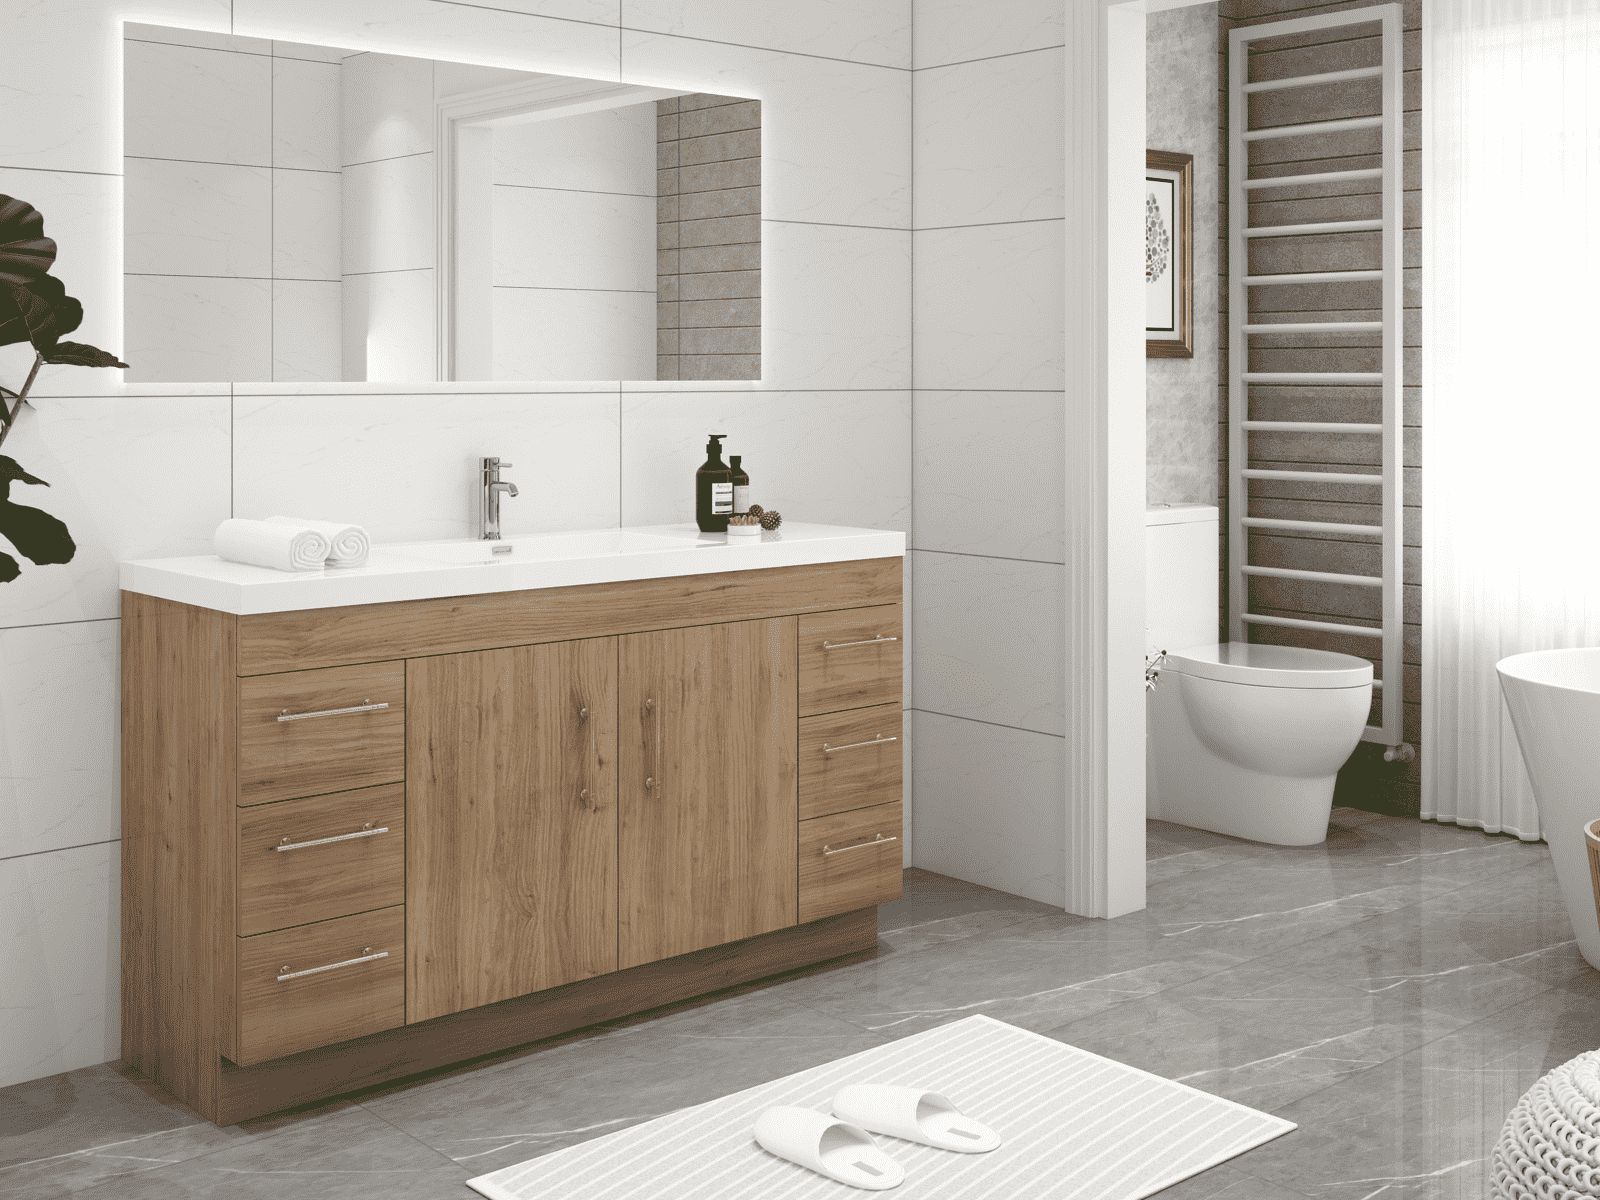 Elsa 60" Freestanding Bathroom Vanity with Reinforced Single Acrylic Sink in Natural Oak | Better Vanity